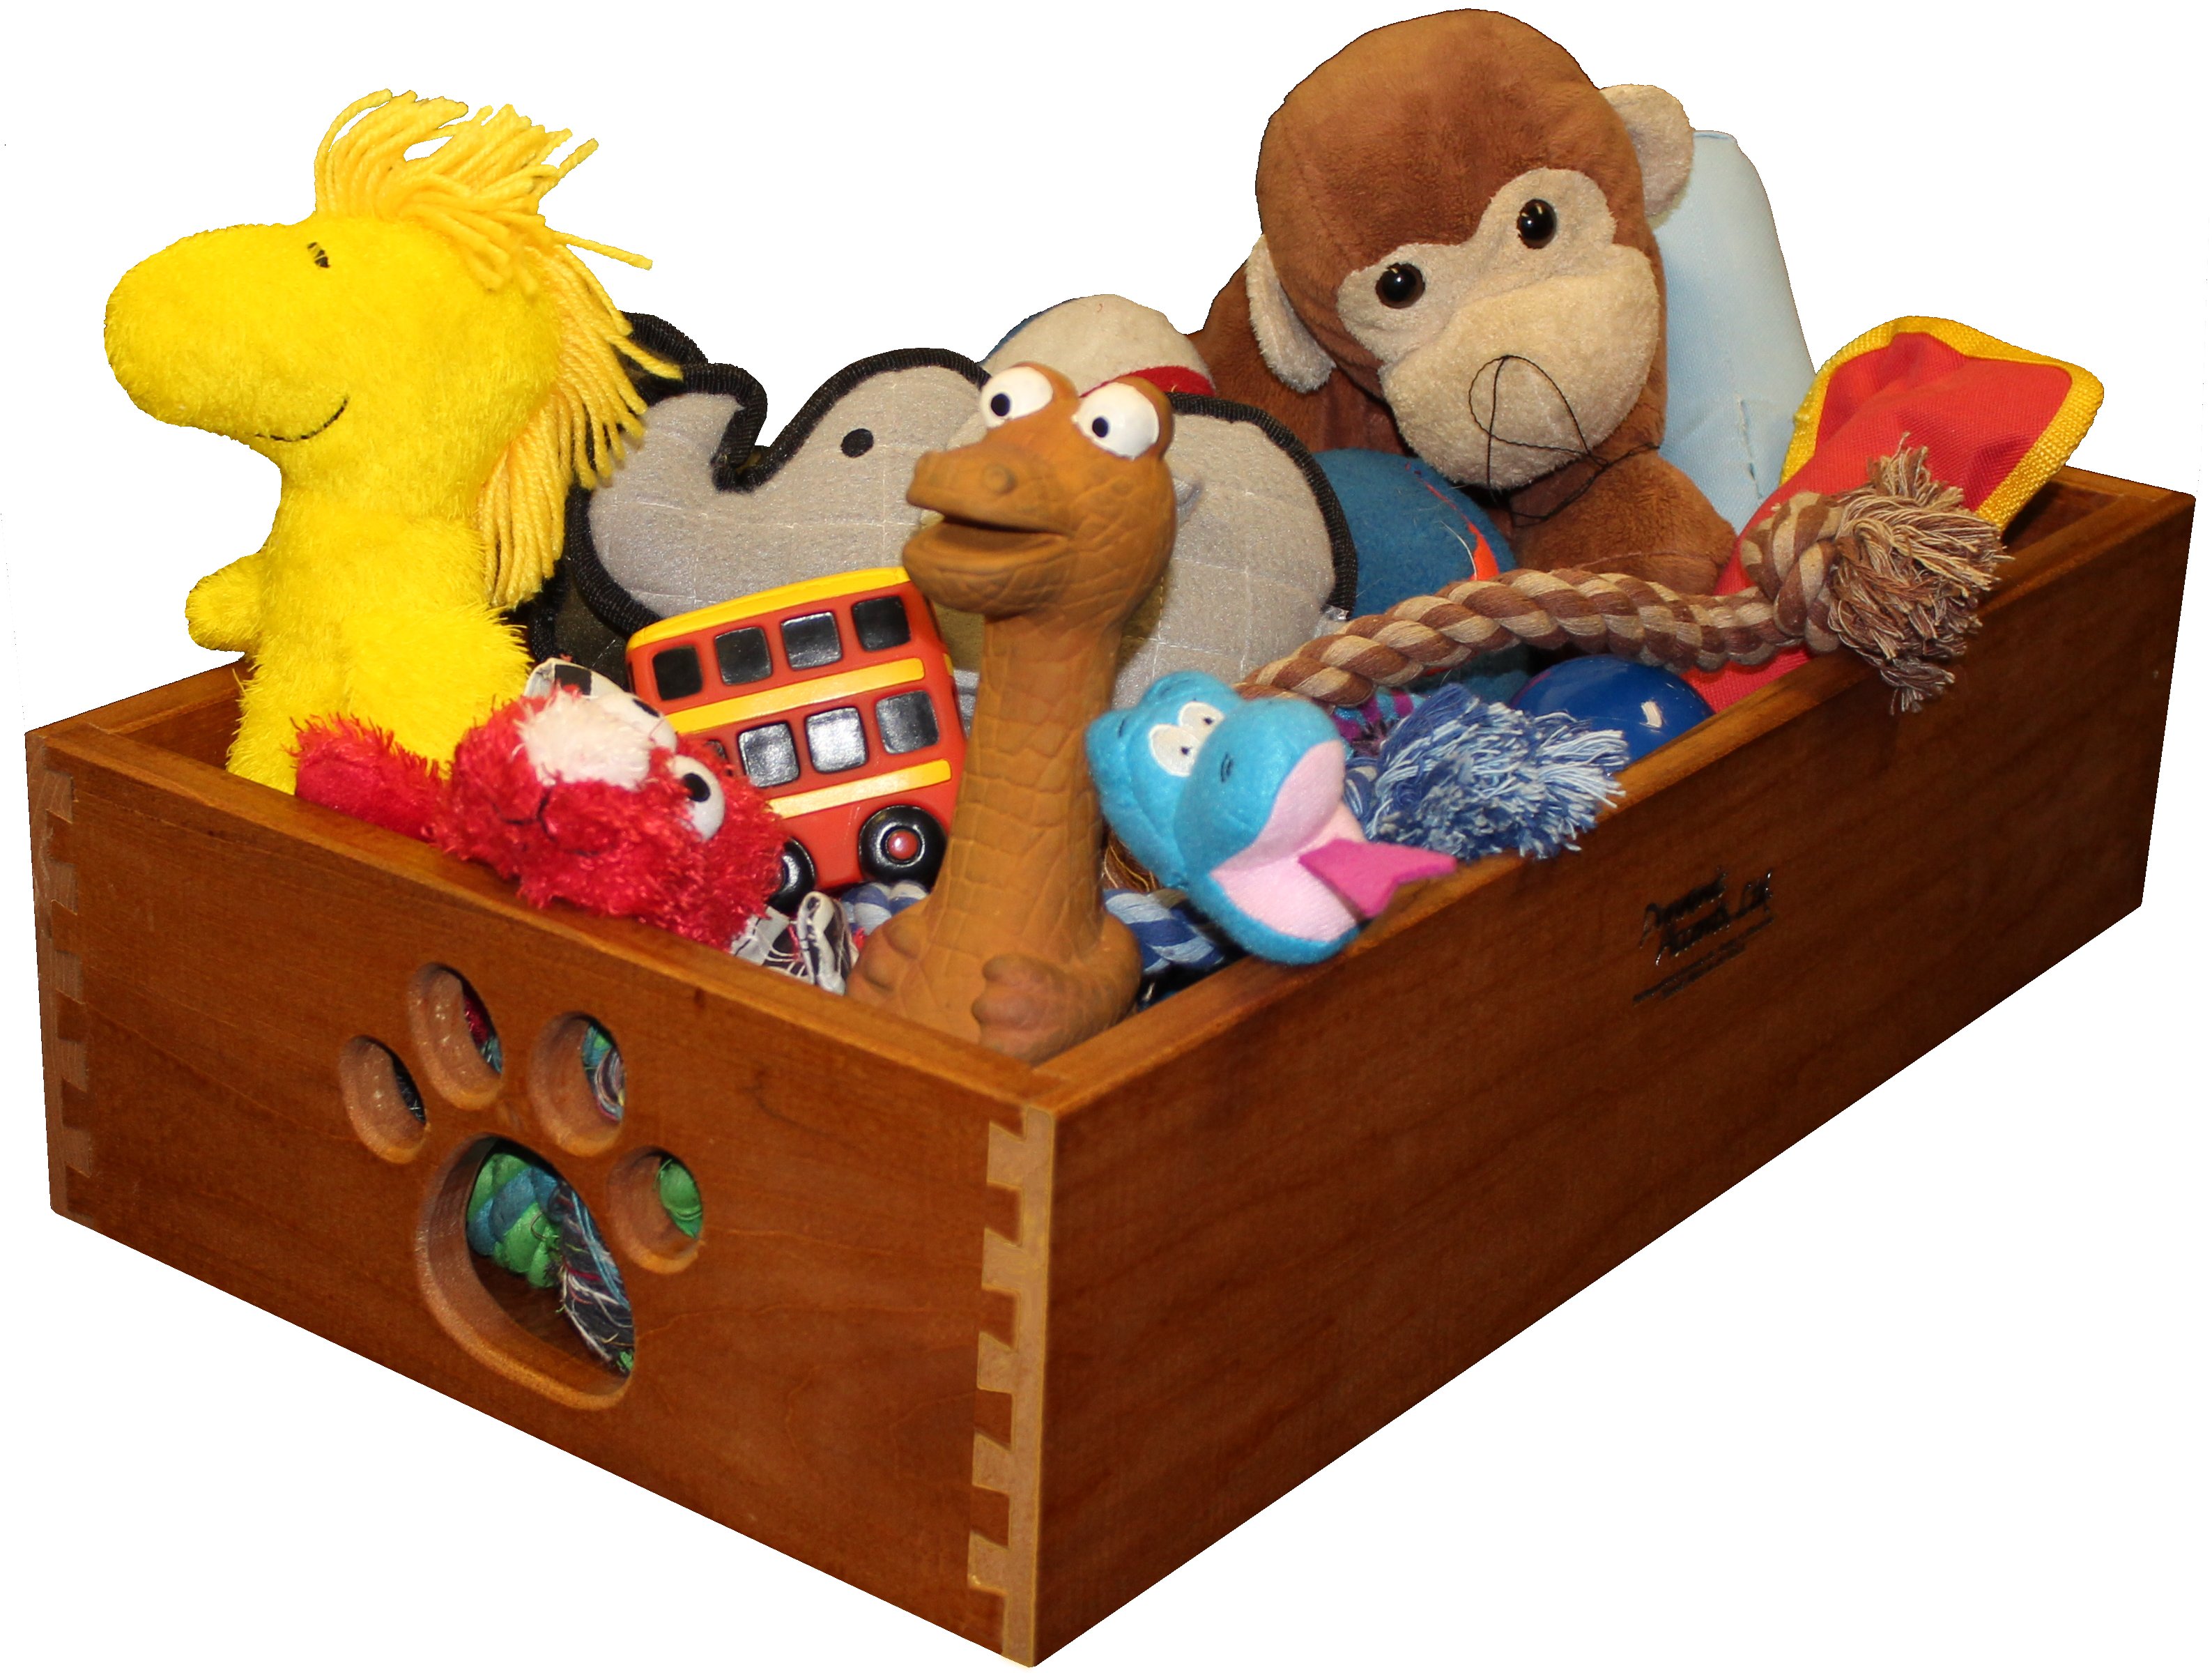 3 in the toy box. Toy Box (игрушки). Коробка с игрушками на английском. Bokses игрушка. Toybox коробка с игрушкой.